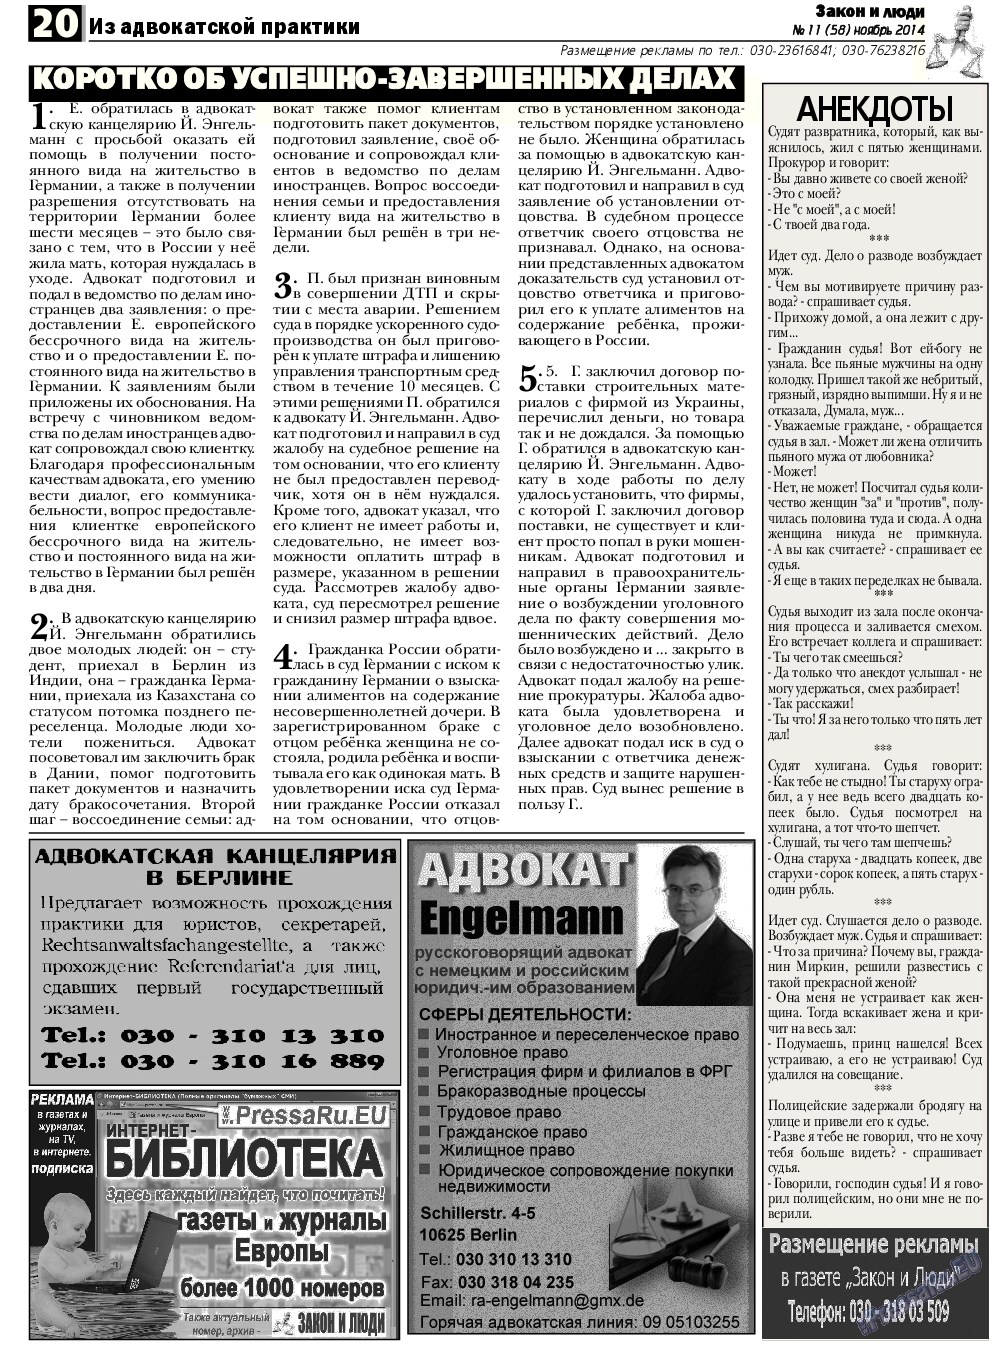 Закон и люди, газета. 2014 №11 стр.20